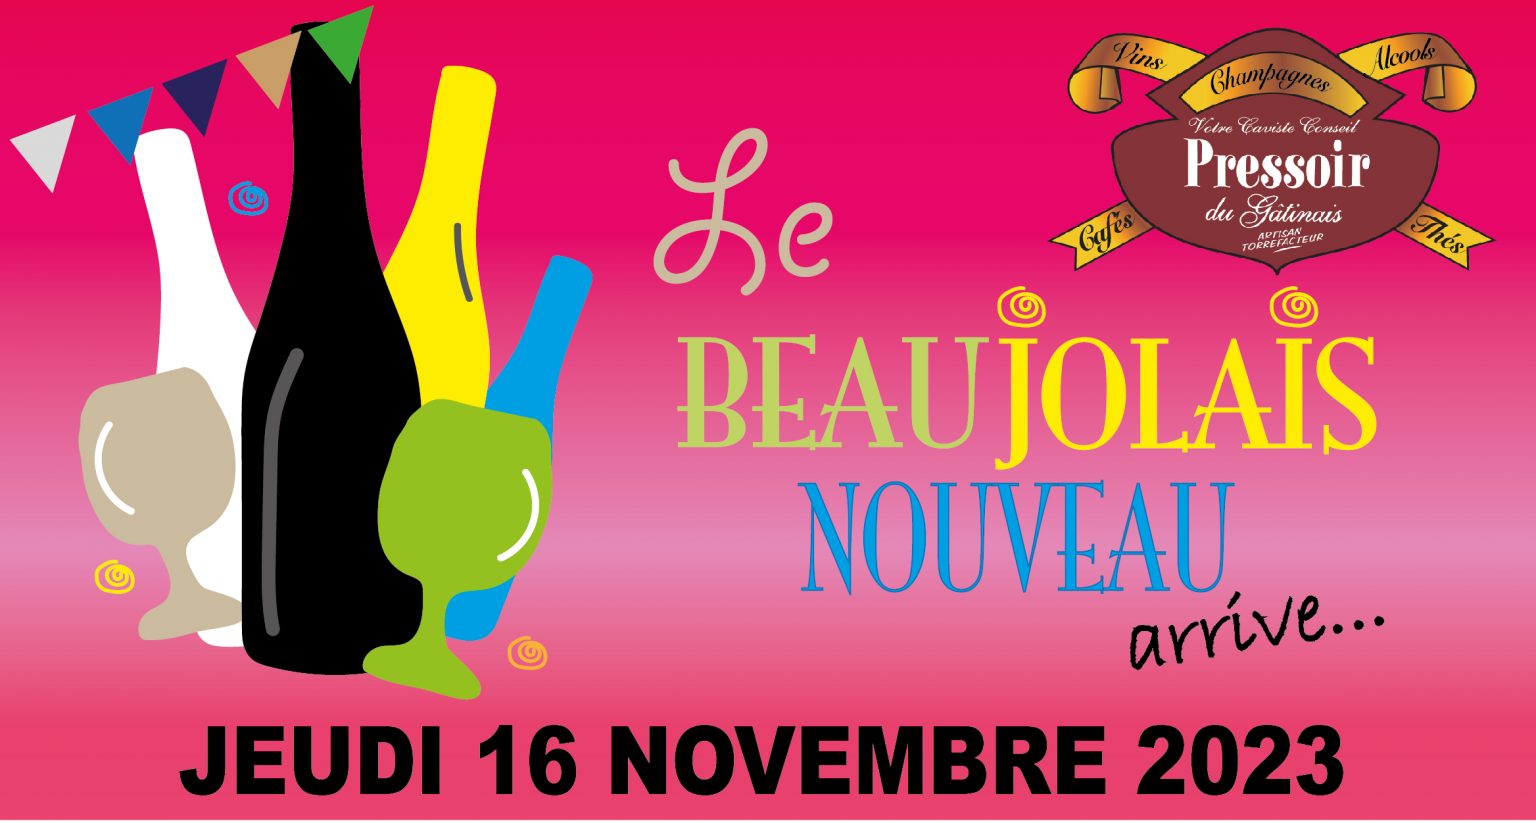 Invitation pour l'arrivée du Beaujolais Nouveau du jeudi 16 novembre 2023